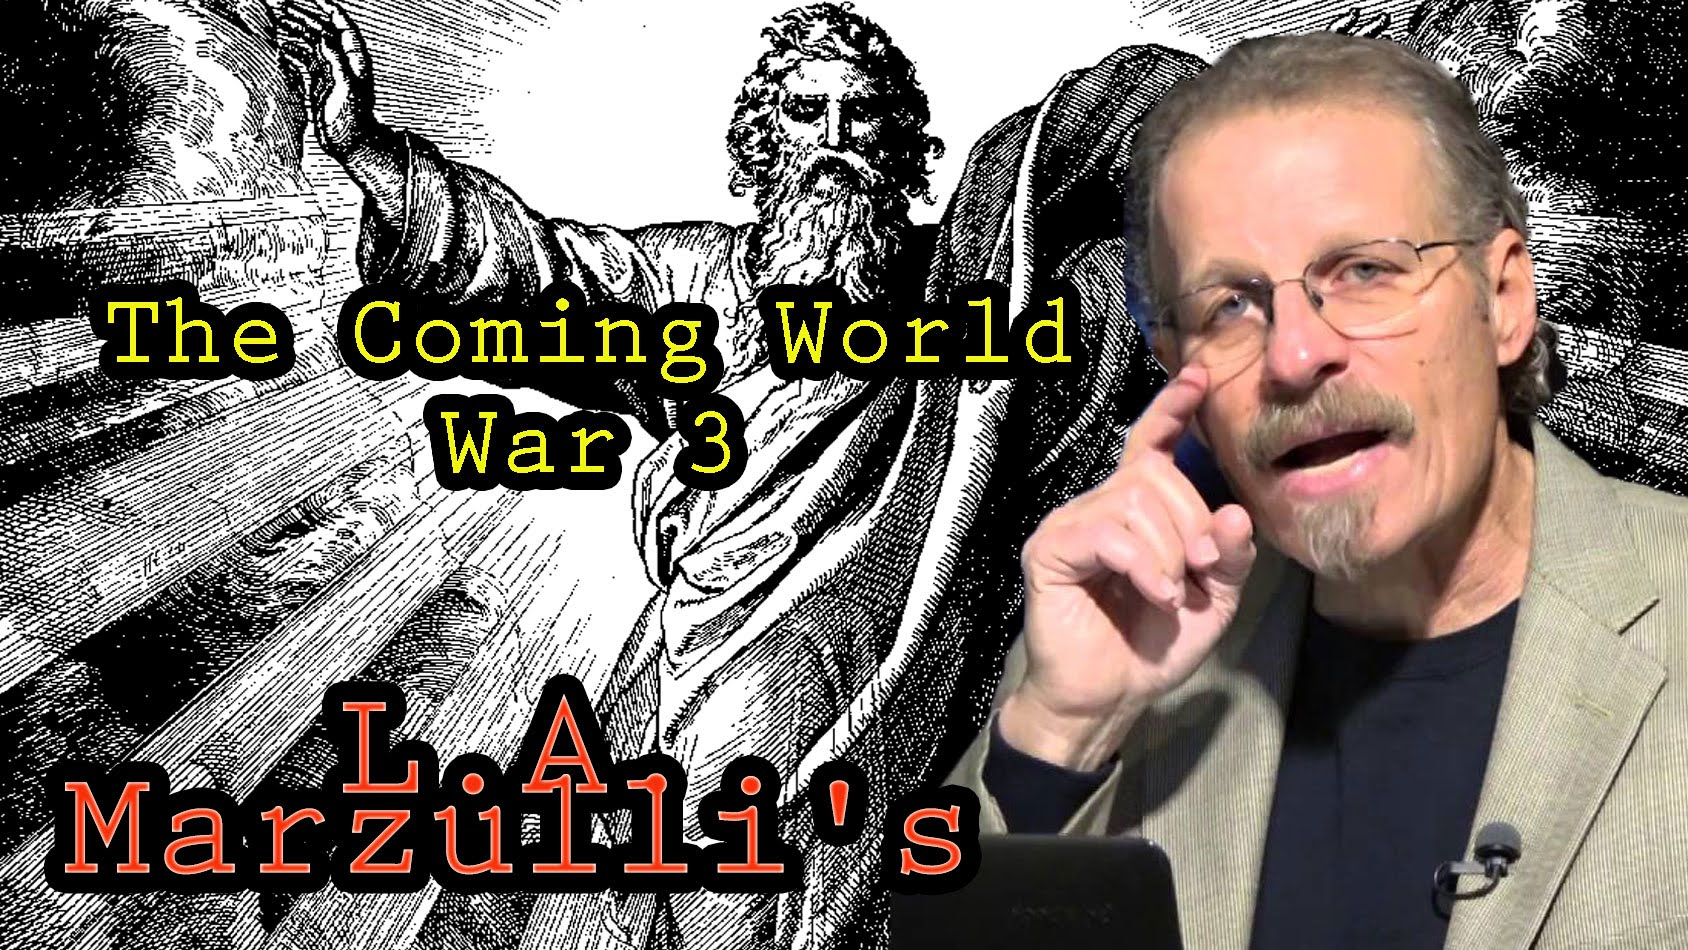 L A Marzulli | The Coming World War 3 | L A Marzulli 2016